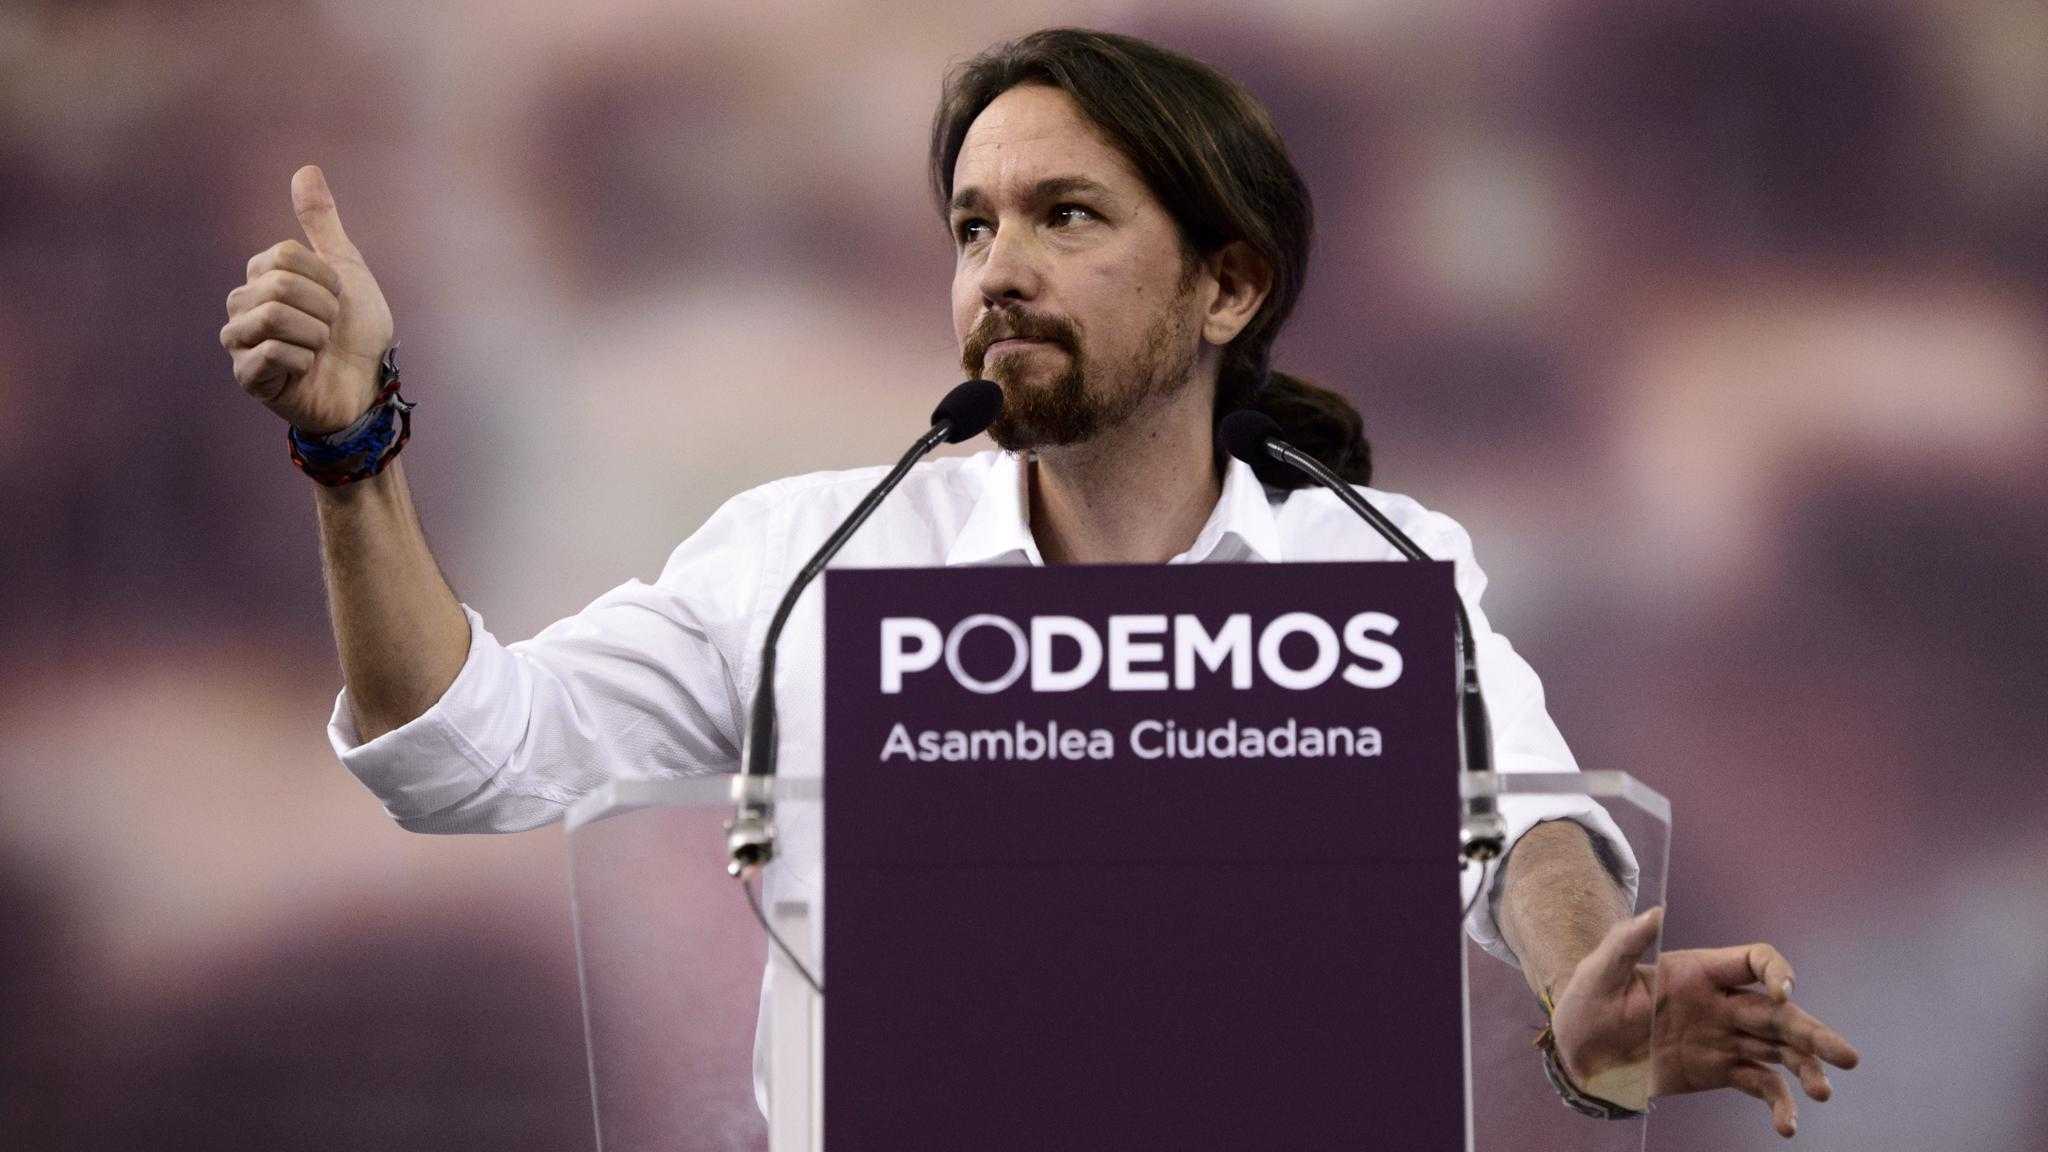 Σε ντιμπέιτ καλεί τον Ραχόι ο επικεφαλής των Podemos